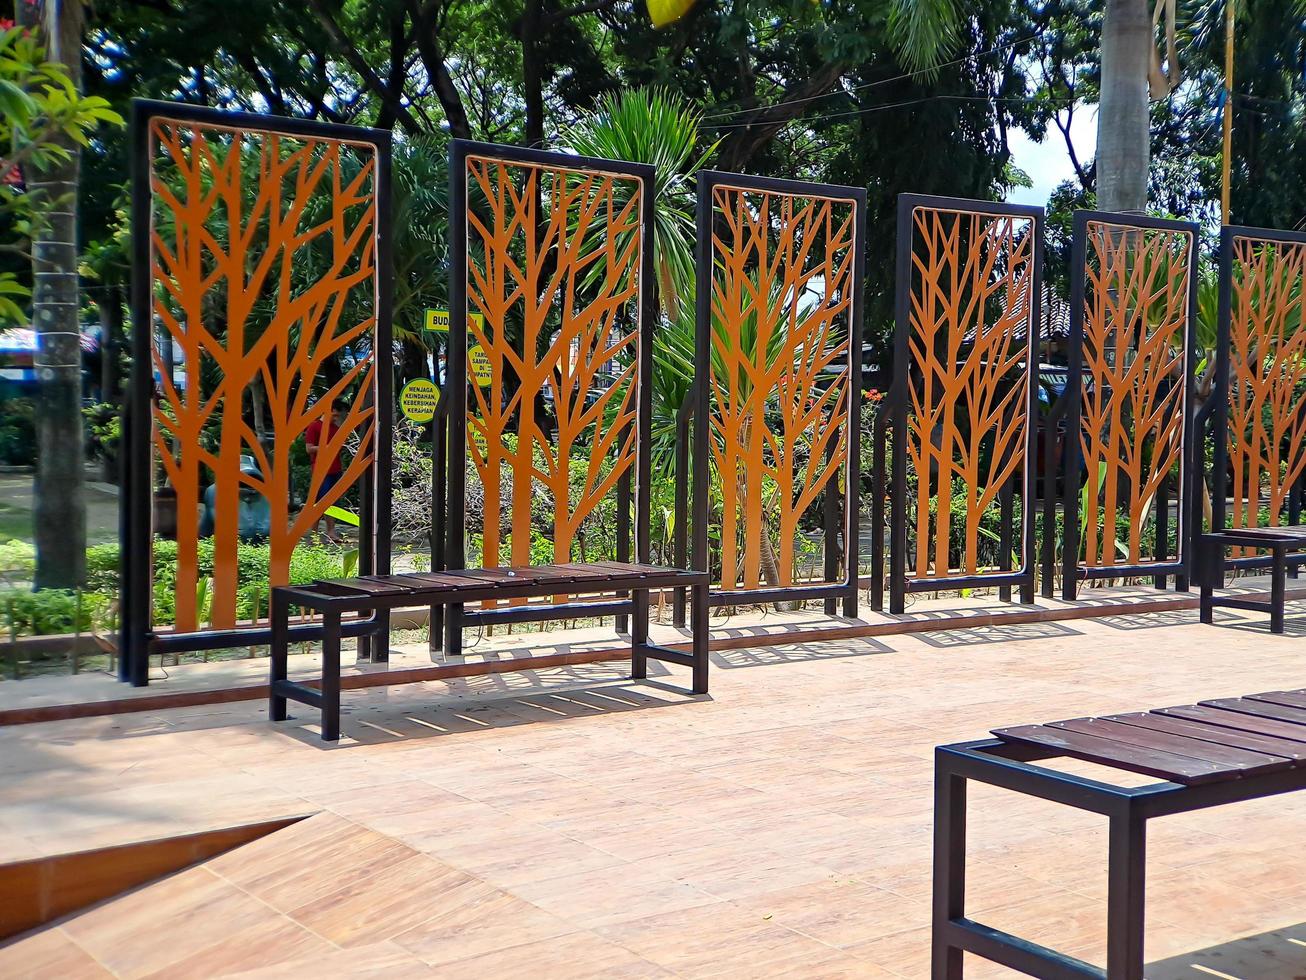 Sichtschutzzaun aus Metall, Baumwandkunst aus Metall, Gold und Schwarz im Rahmen, dies wurde im Square Park gedreht foto